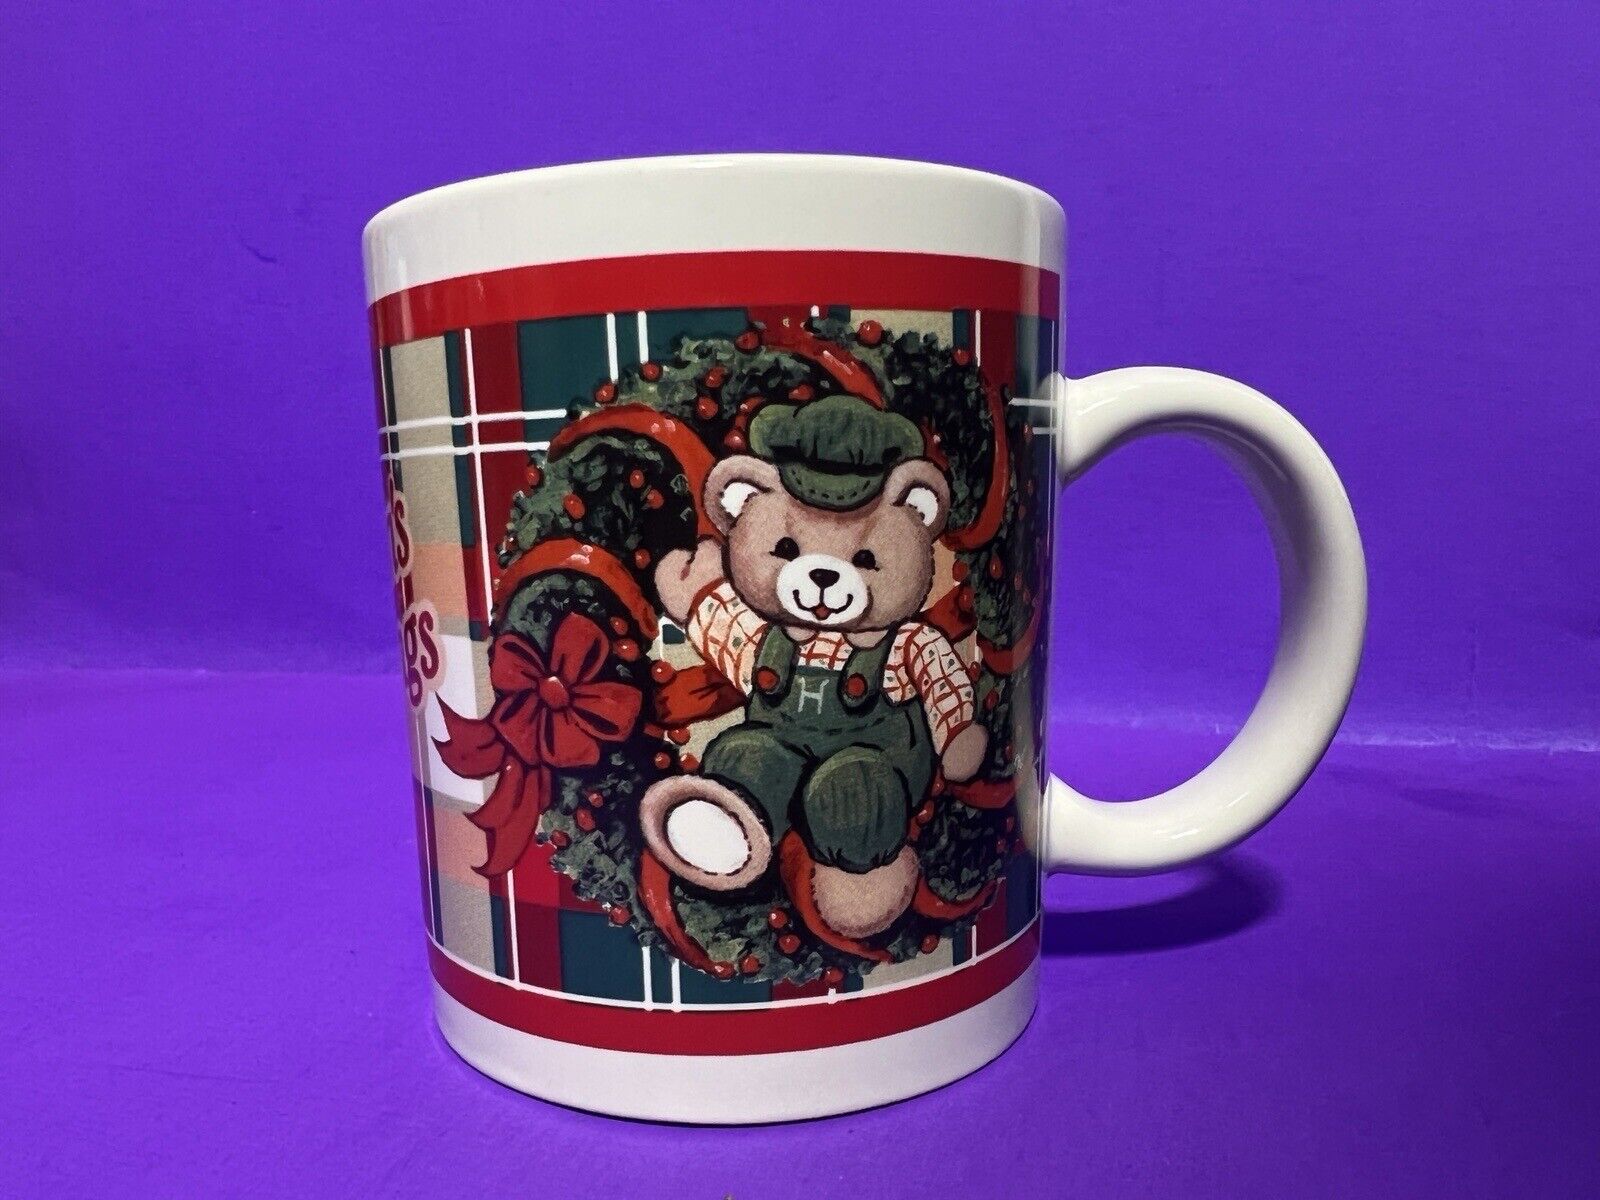 VTG TB TRADING Co PLAID CHRISTMAS MUG Teddy Bears “Seasons Greetings” Vintage